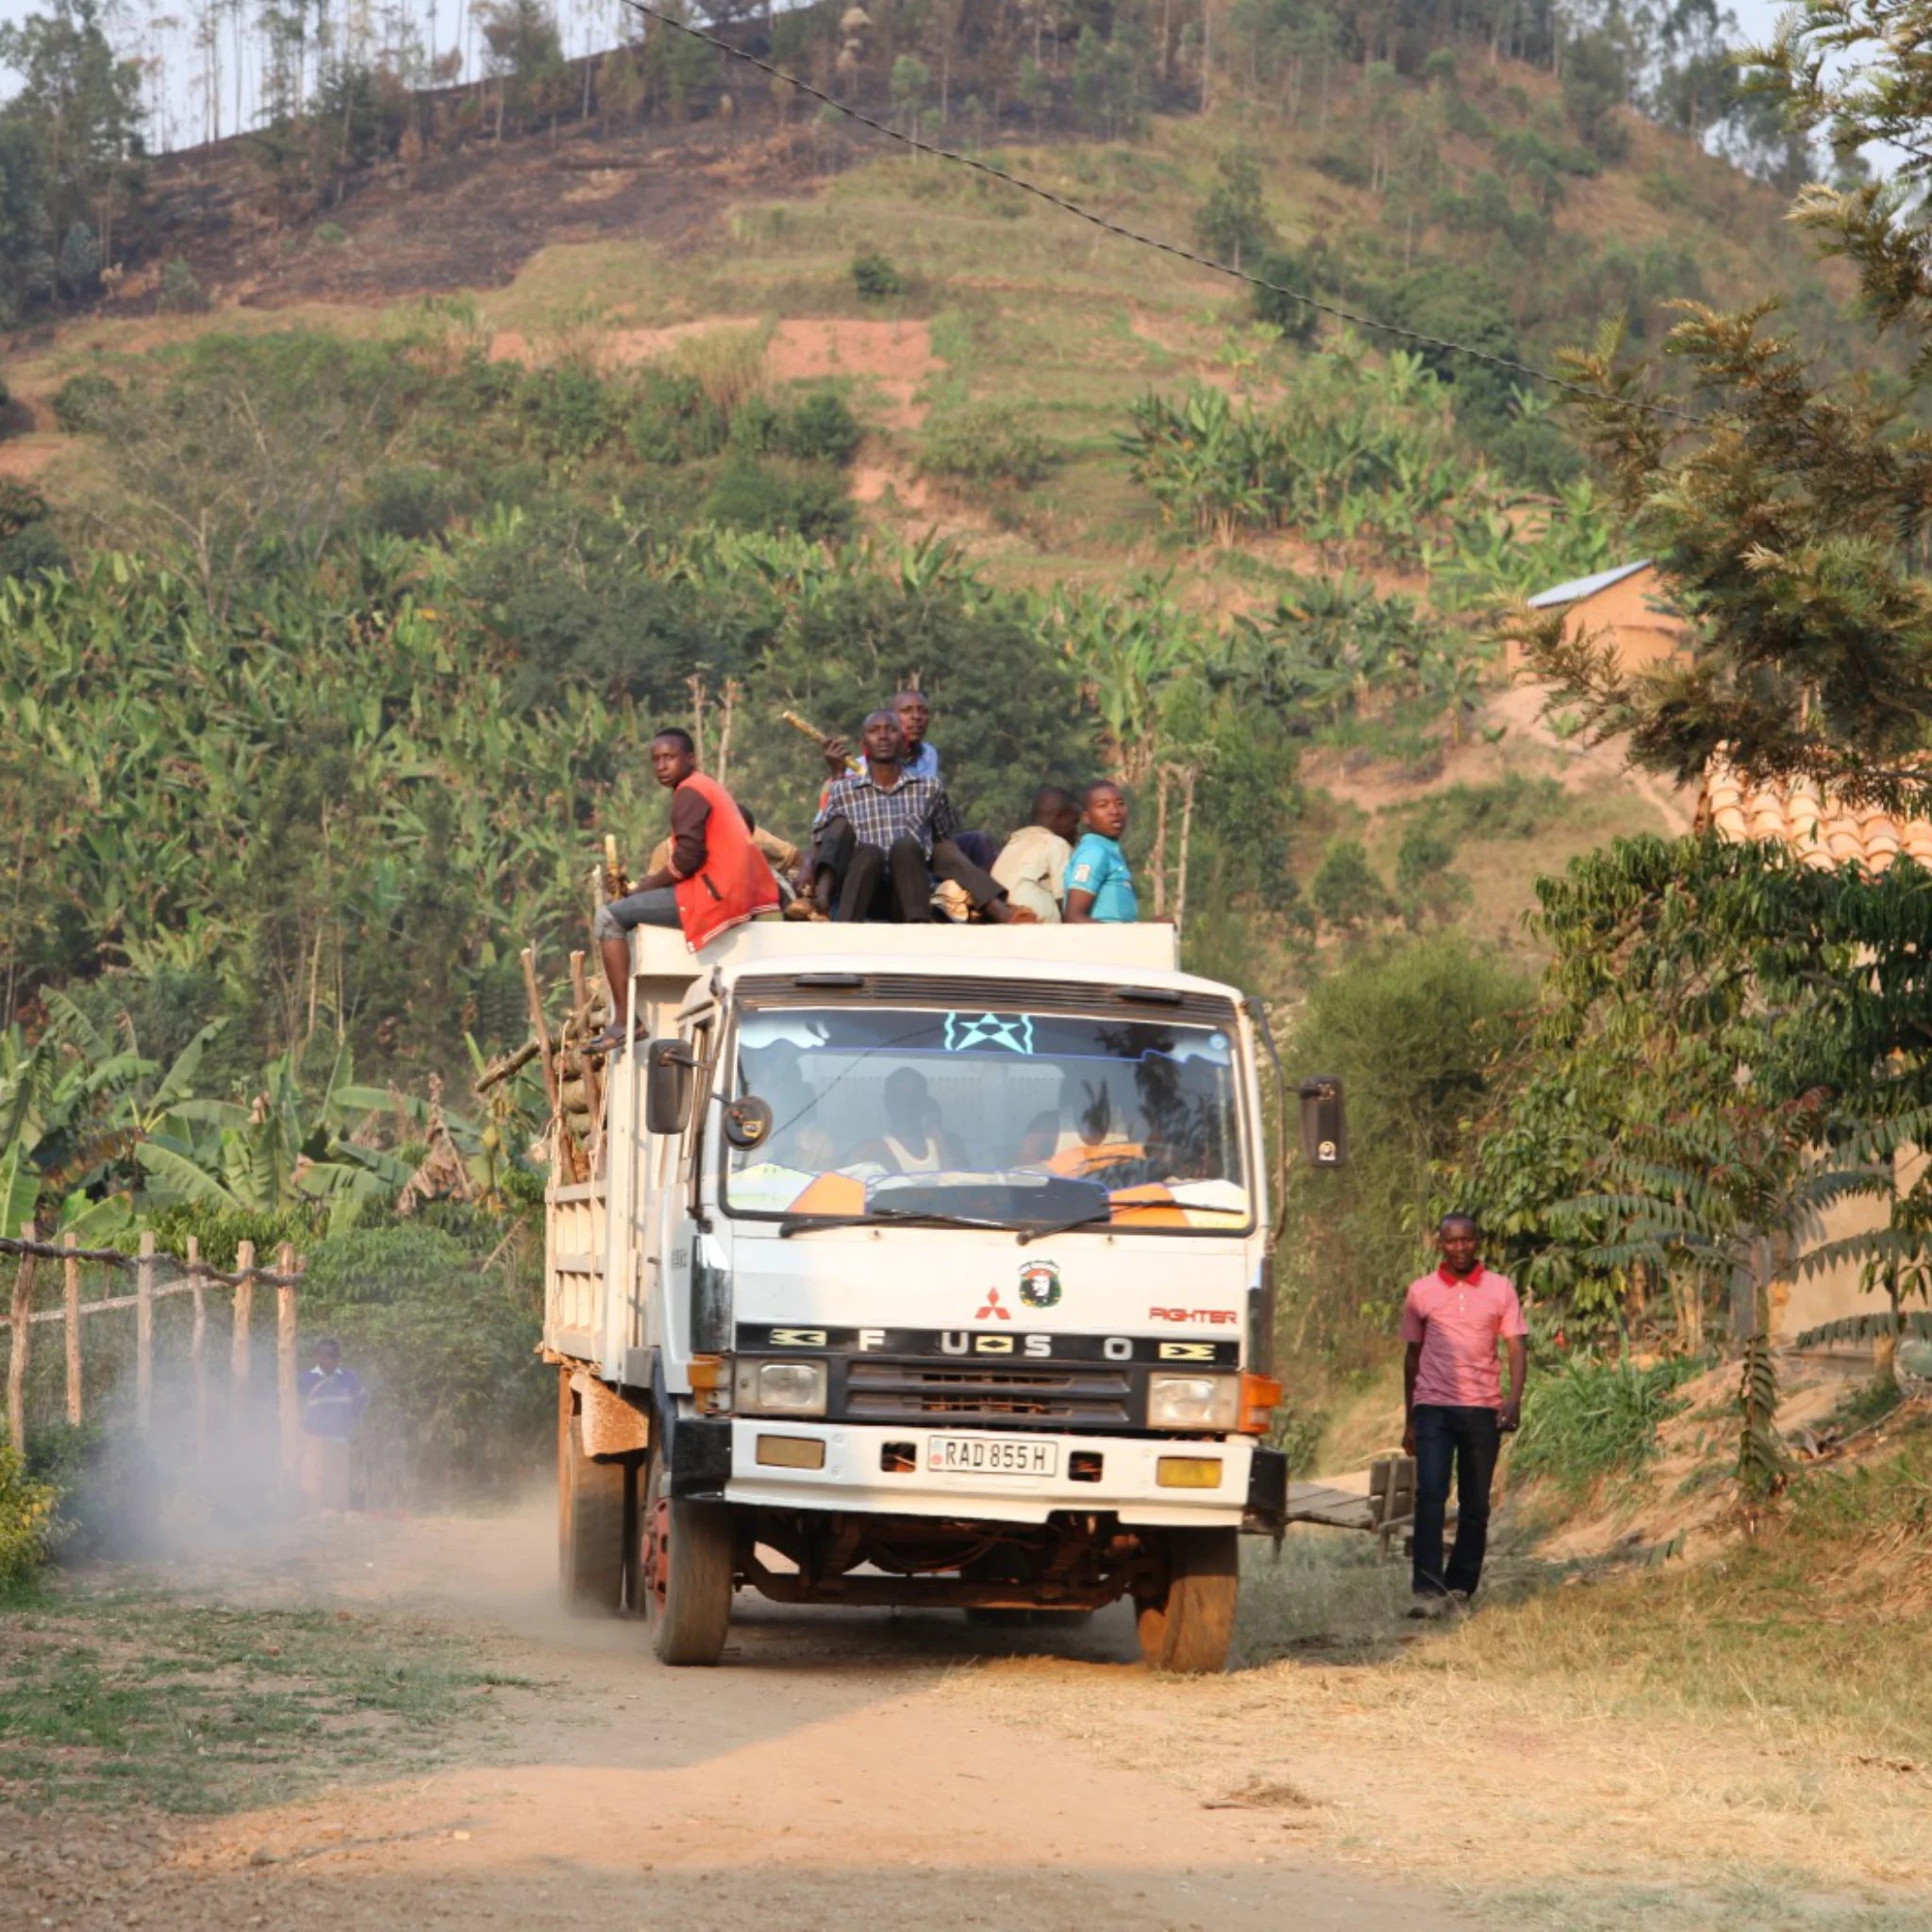 Kaffeearbeiter in Ruanda transportieren unseren Mr. Kong, der Teil des Marcello Strong ist, auf einem LKW über eine unbefestigte Straße.